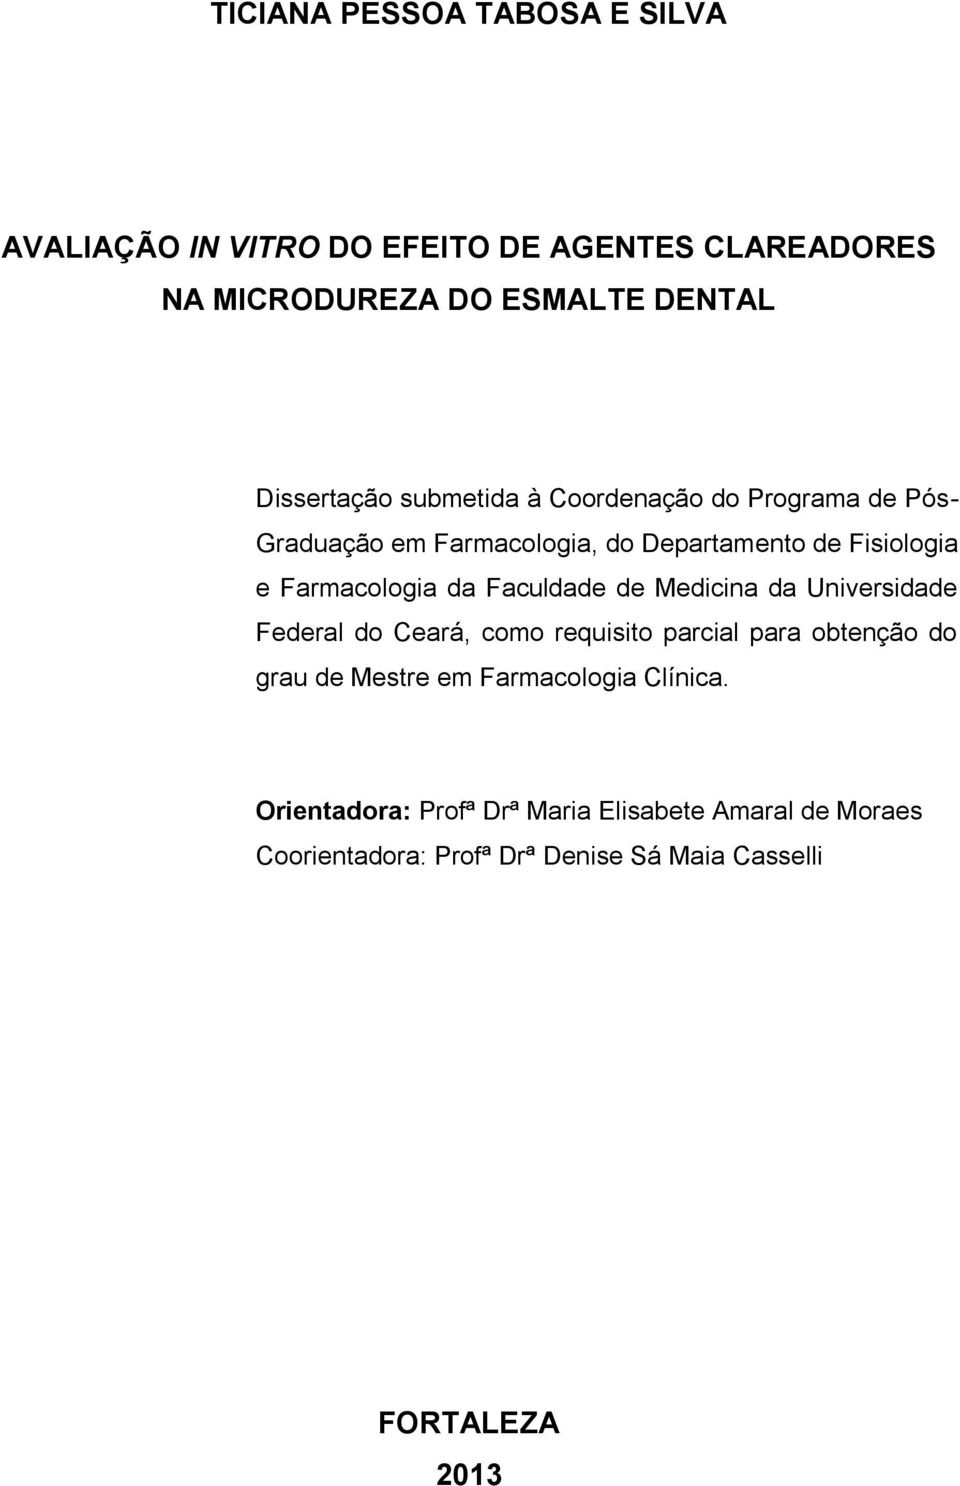 Farmacologia da Faculdade de Medicina da Universidade Federal do Ceará, como requisito parcial para obtenção do grau de